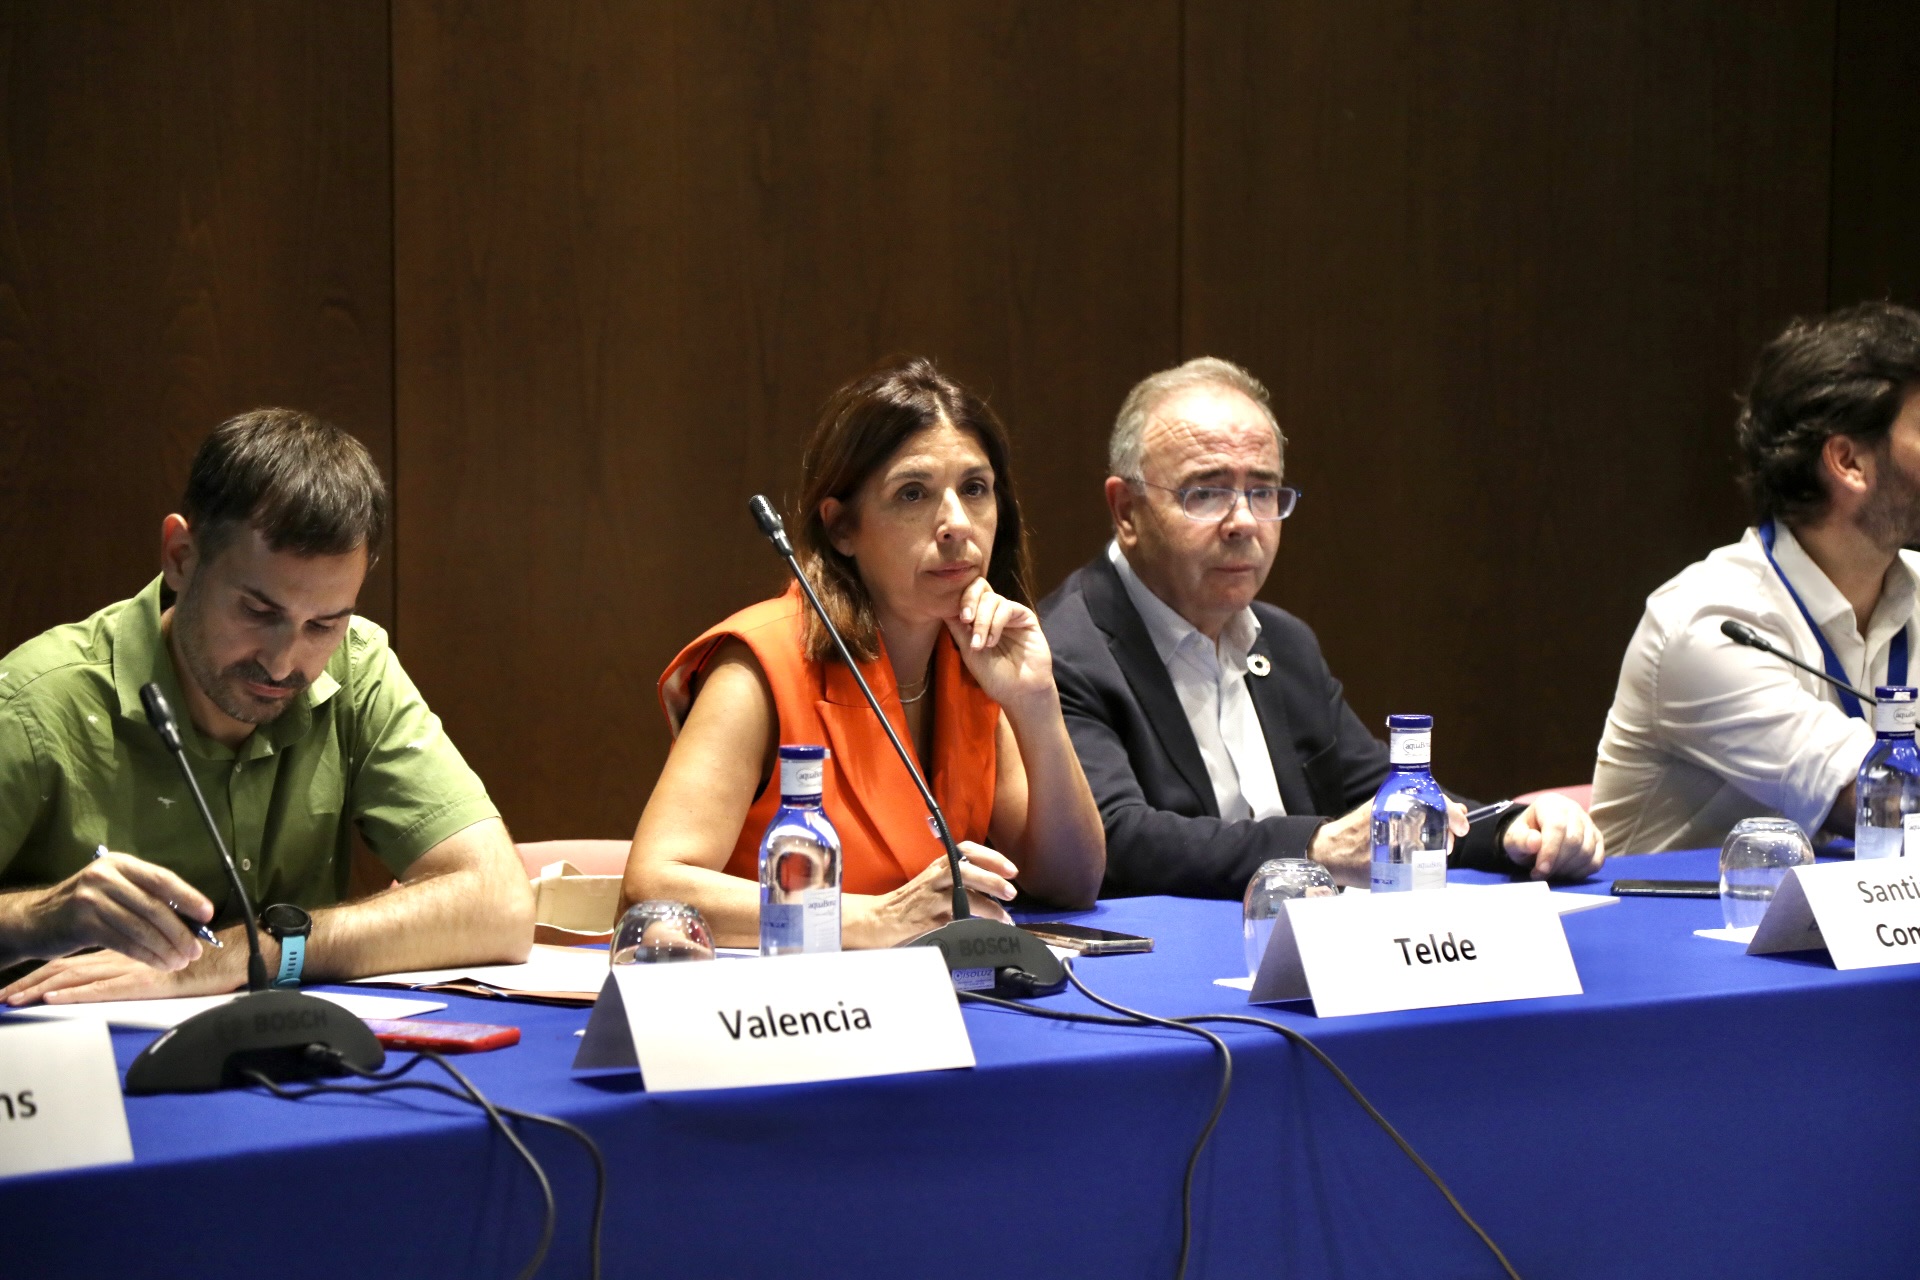 La alcaldesa de Telde participa en el Encuentro de Líderes Urbanos de Málaga / CanariasNoticias.es